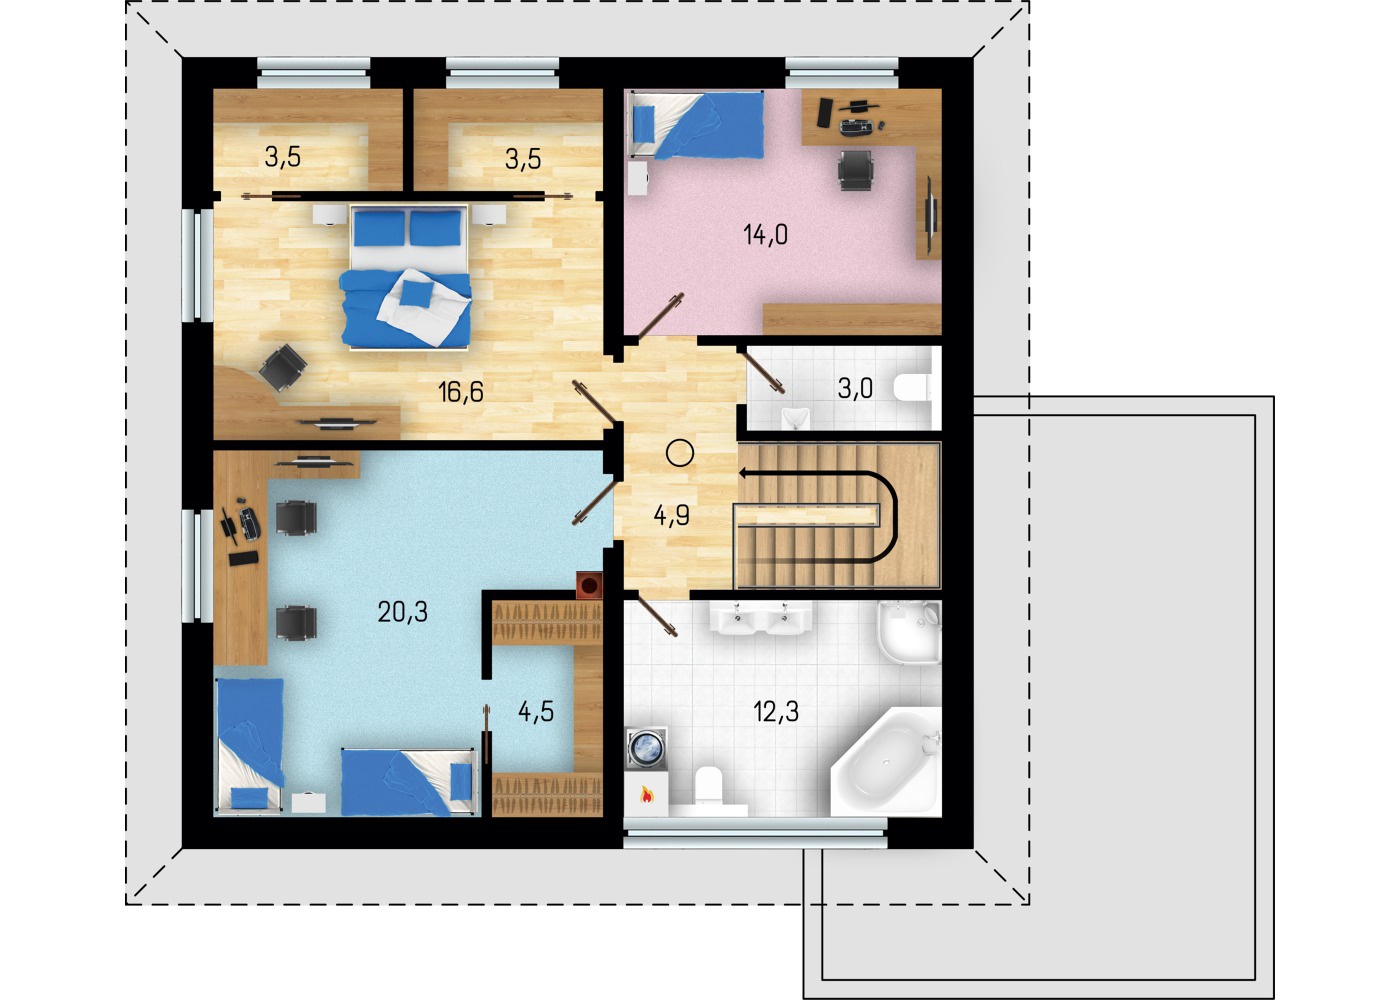 Plan etaj cu 3 dormitoare si 2 bai